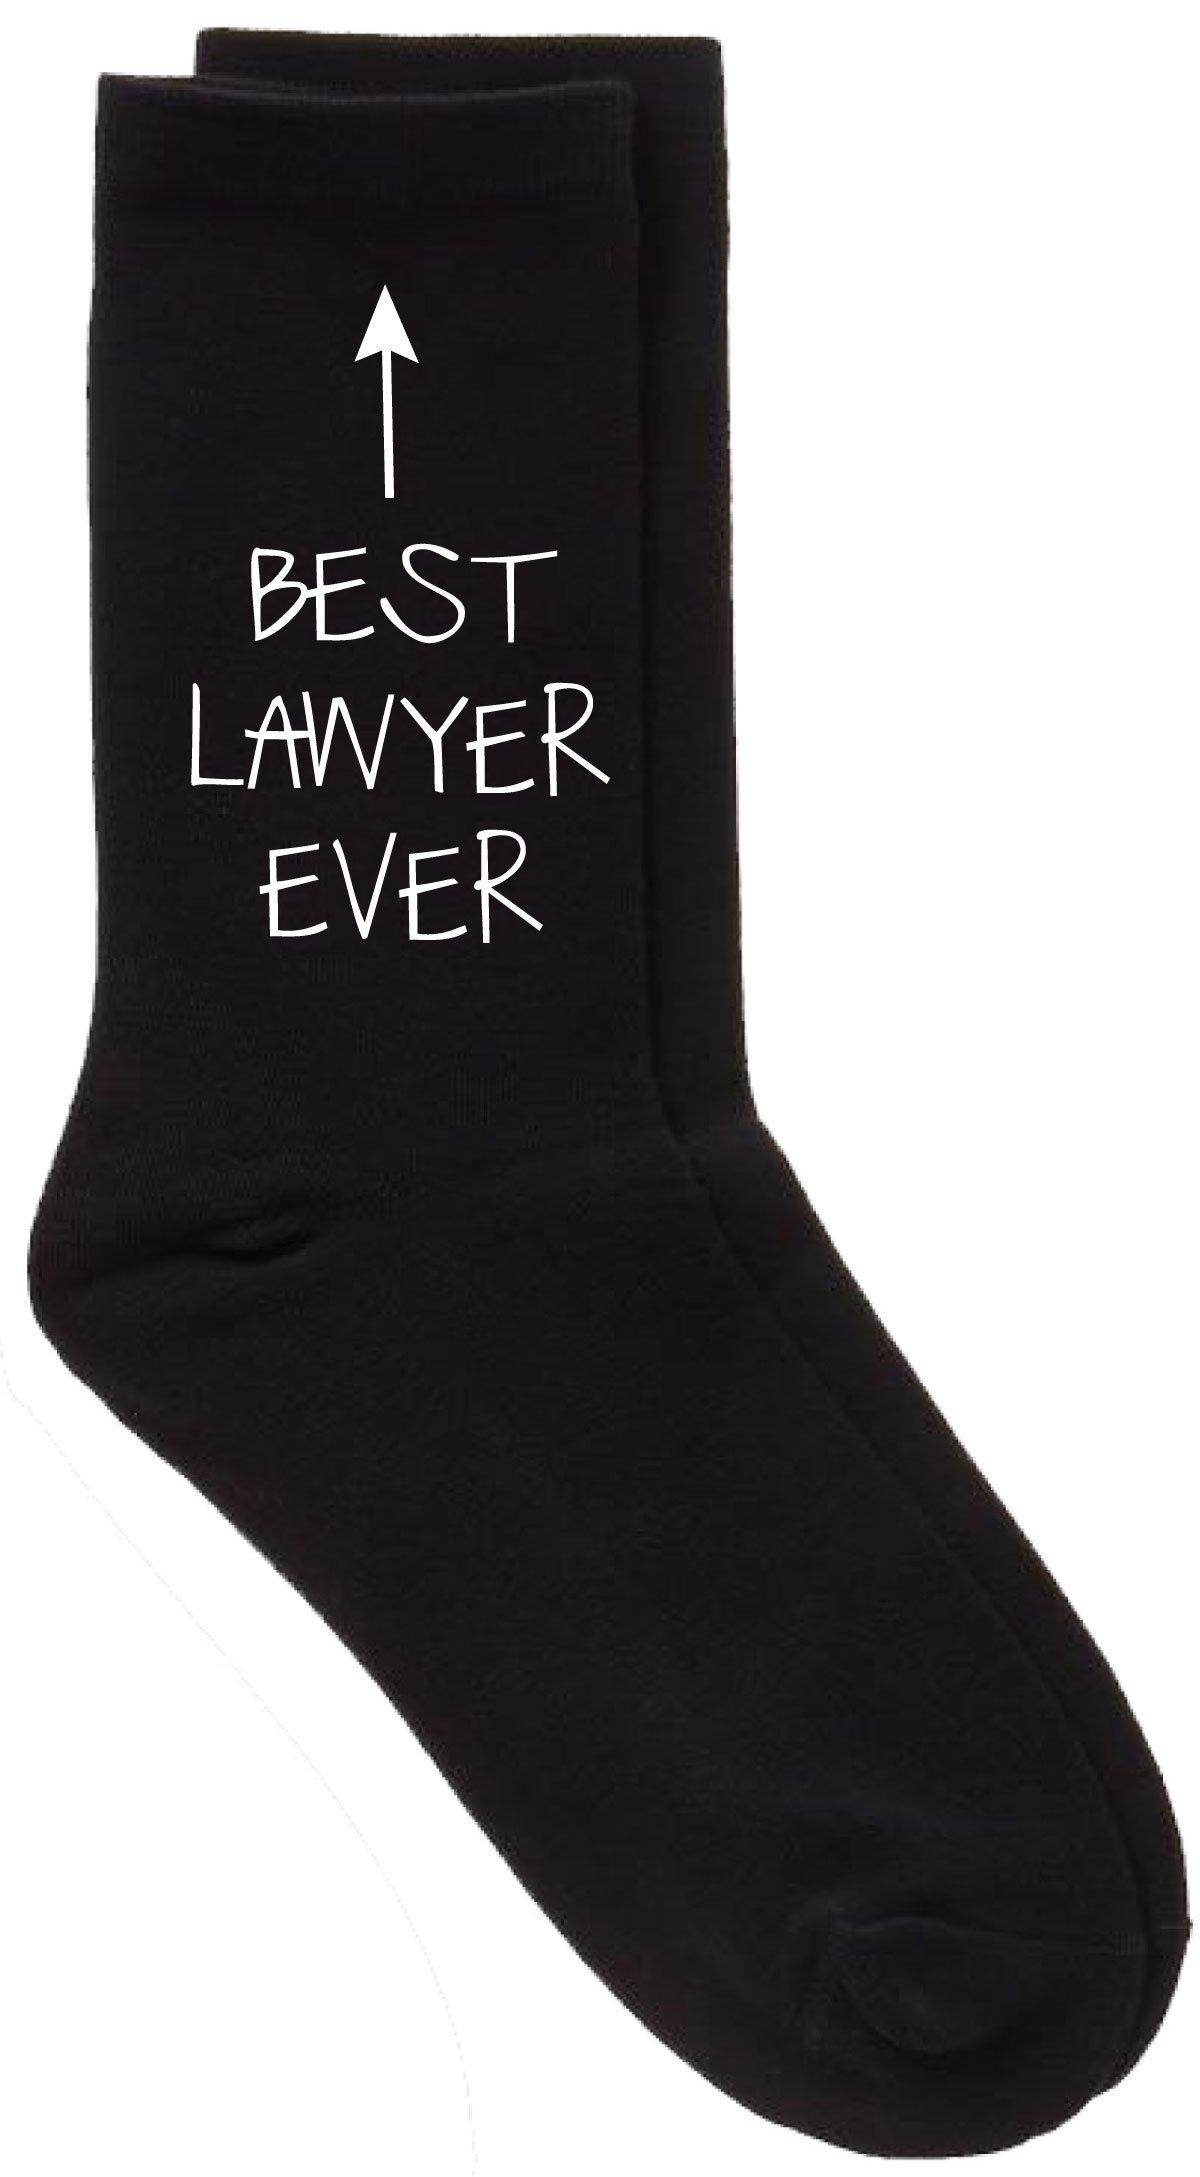 черные носки до щиколотки best dad ever period 60 second makeover черный Черные носки Best Lawyer Ever 60 SECOND MAKEOVER, черный